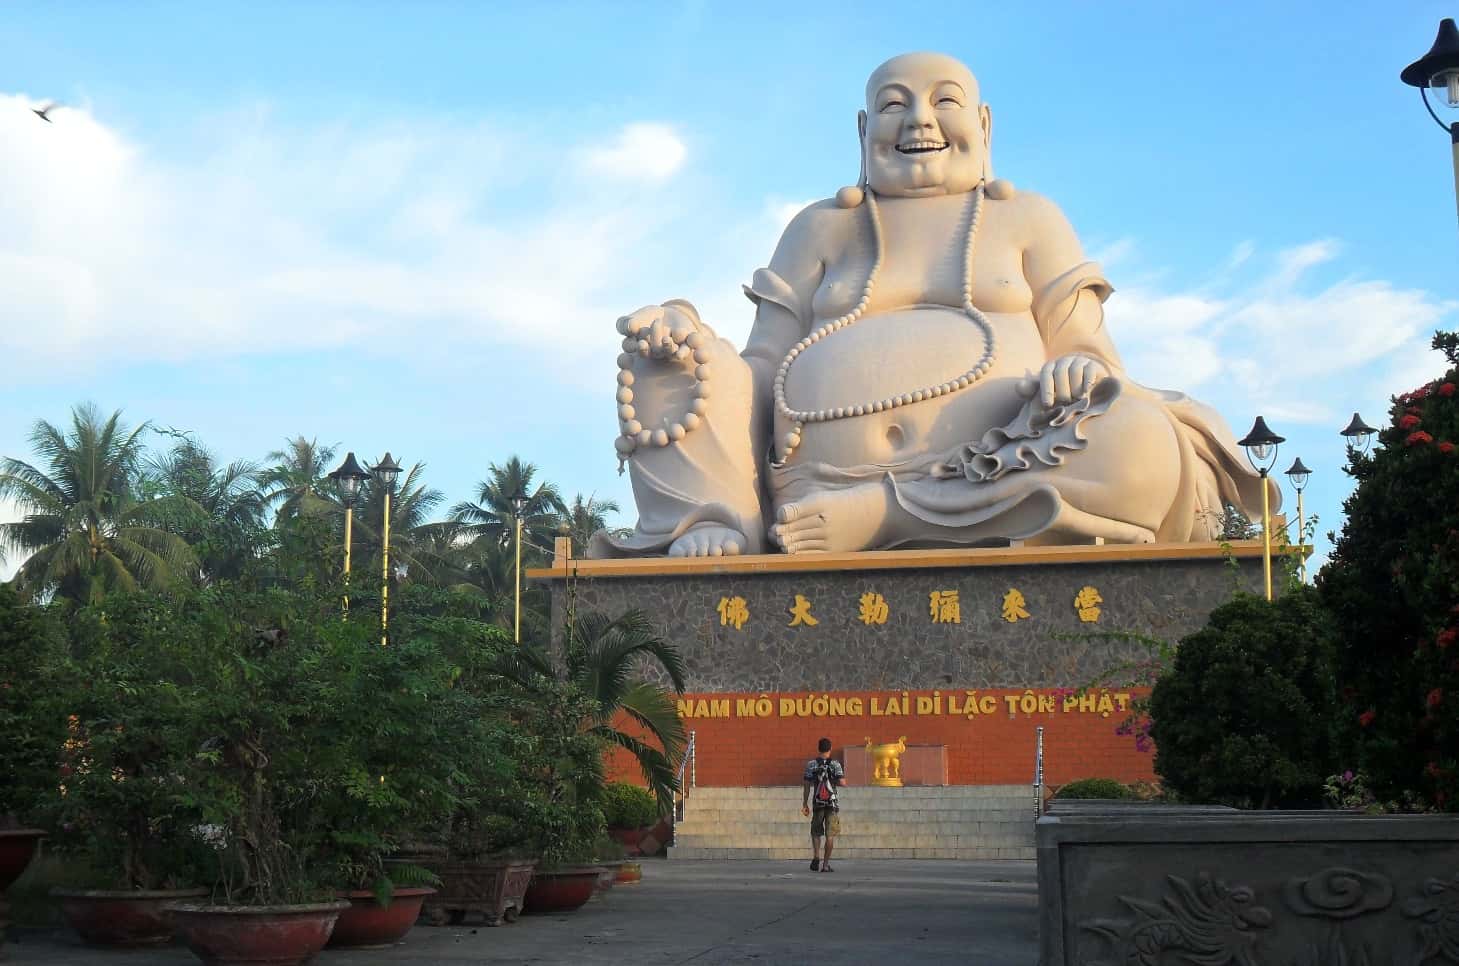 Budia, laughing buddha, statue